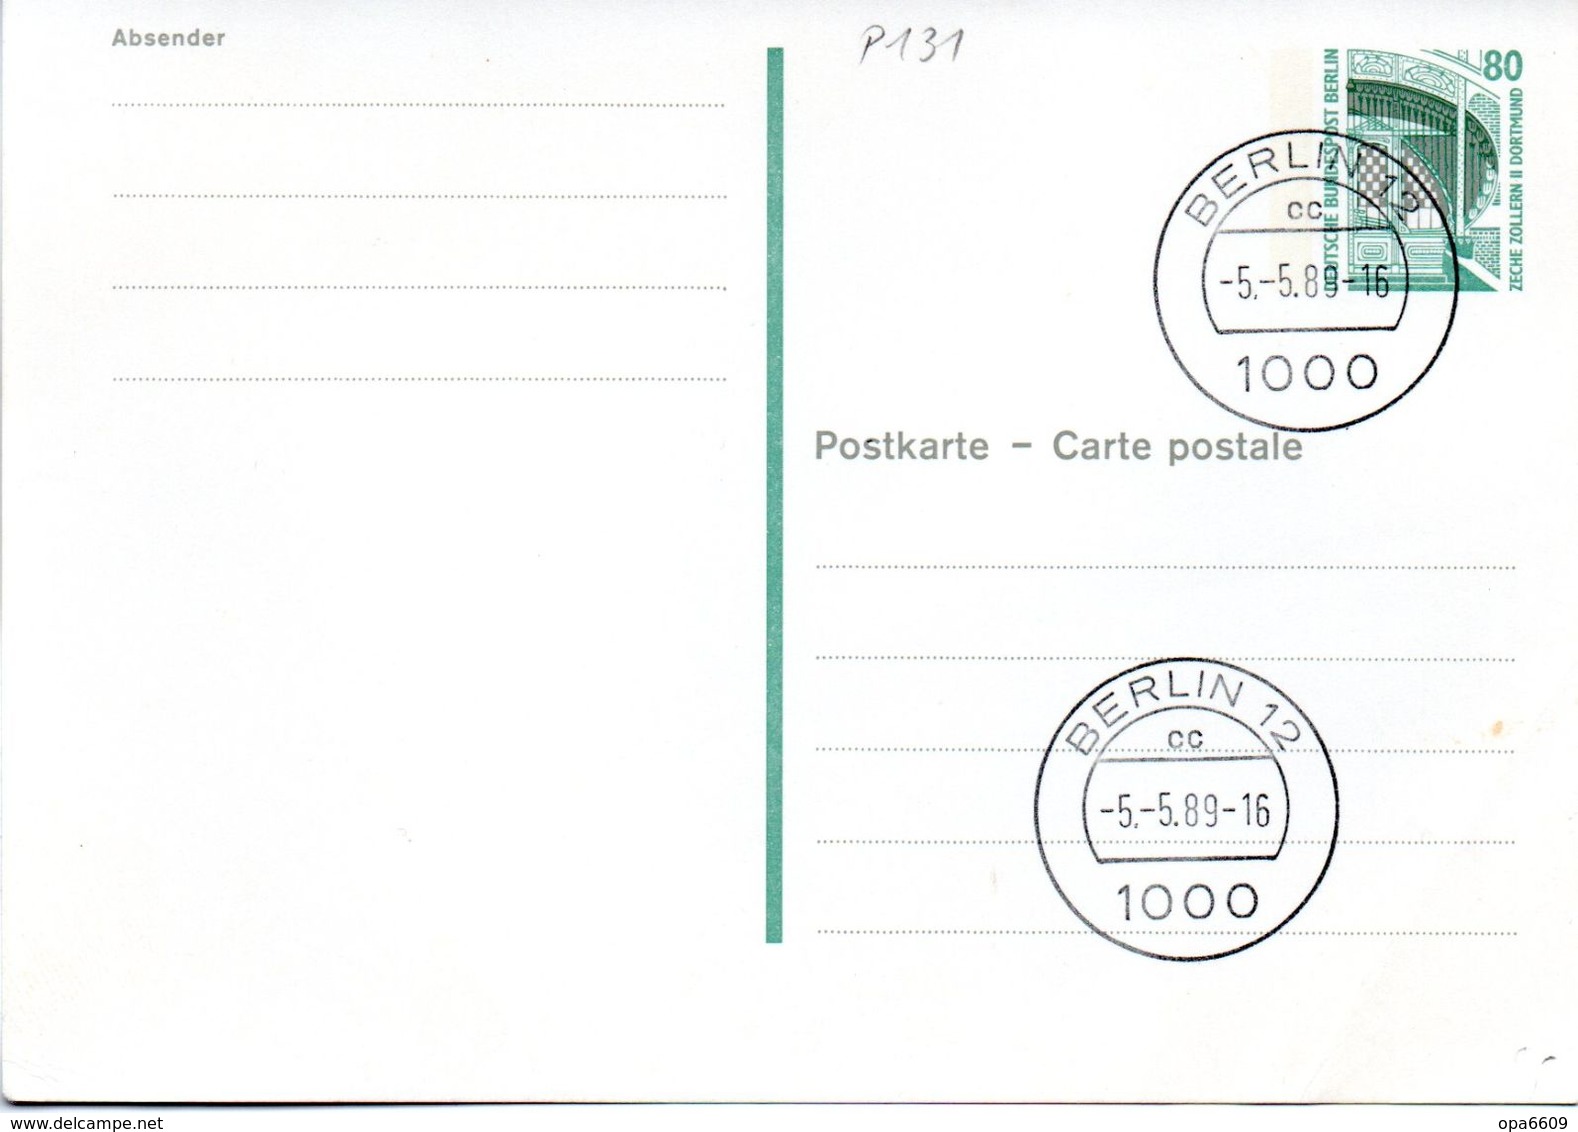 WB Amtl. Ganzsachen-Postkarte P131  Wst. "ZECHE ZOLLERN" 80(Pf) Grün, TSt.5.5.89 BERLIN 12 - Postcards - Used